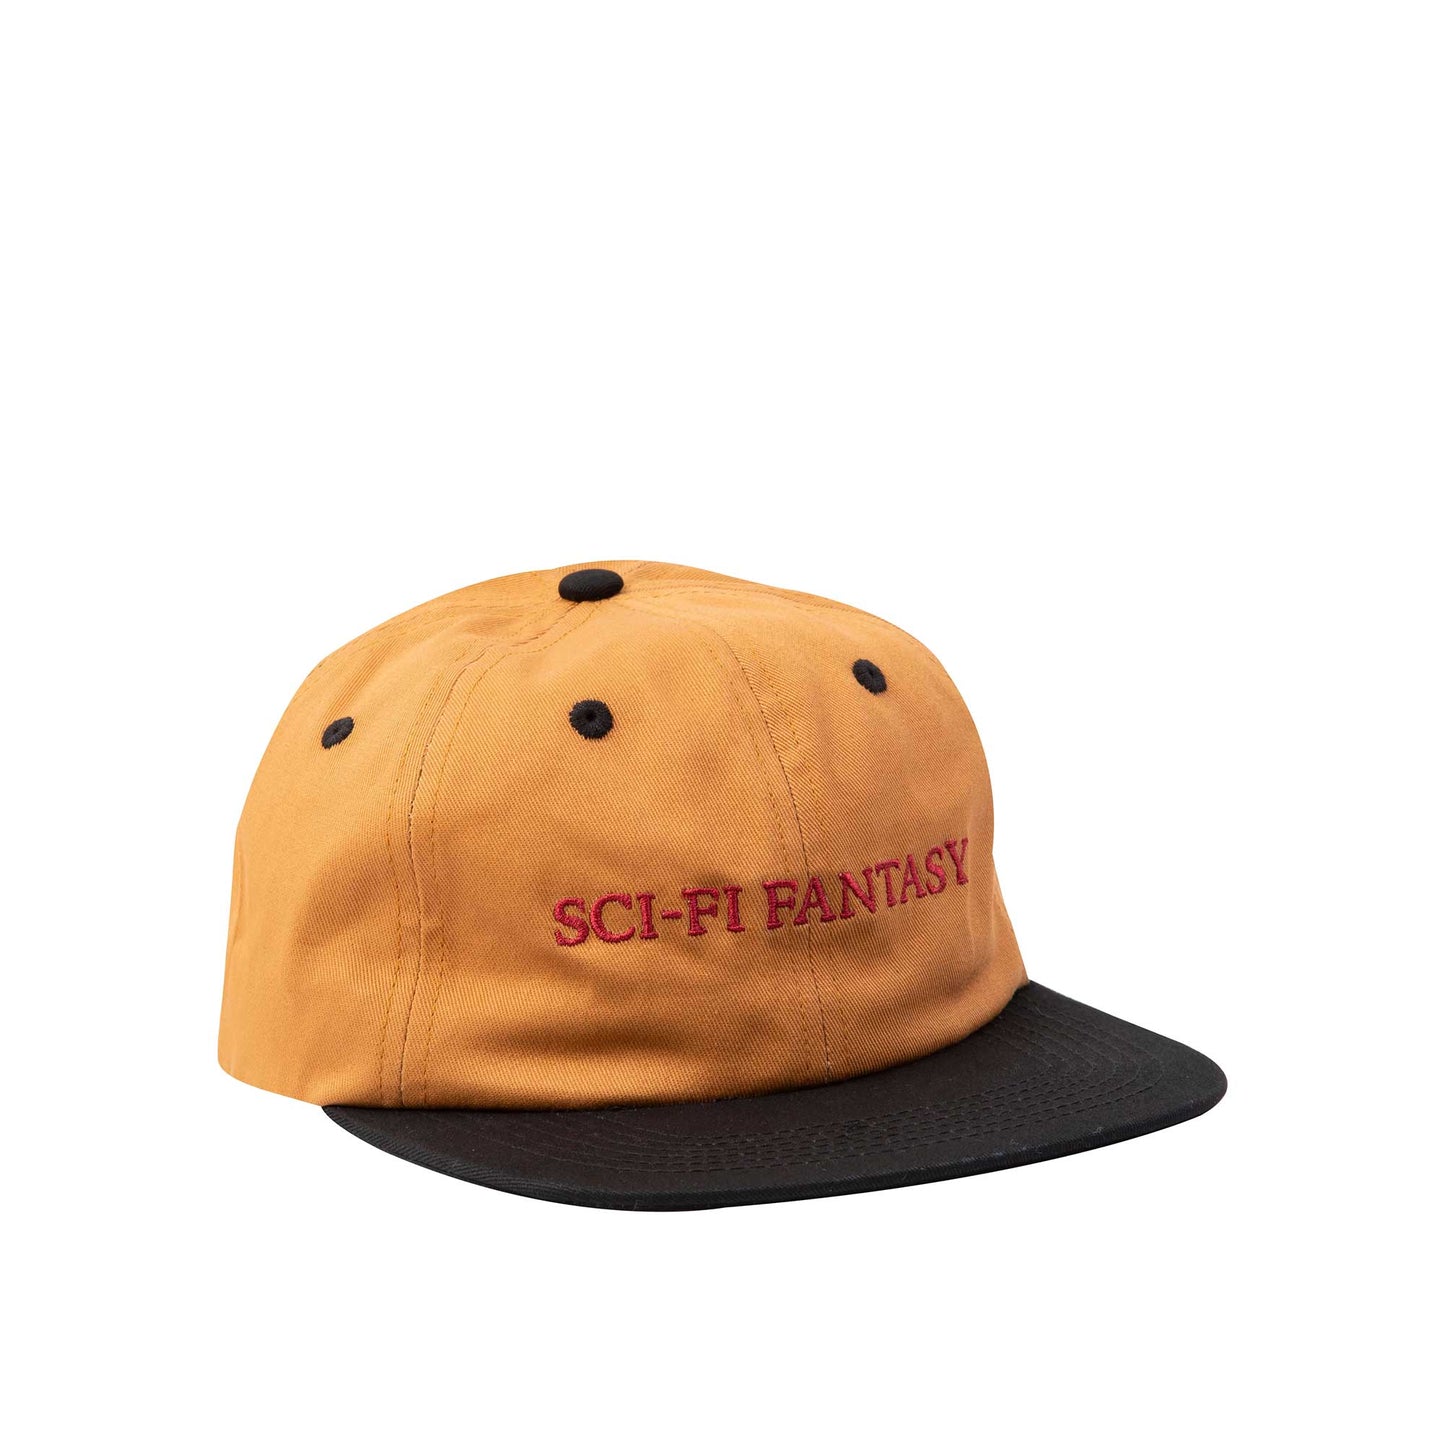 Sci-Fi Fantasy Flat Logo Hat, brown/black - Tiki Room Skateboards - 1